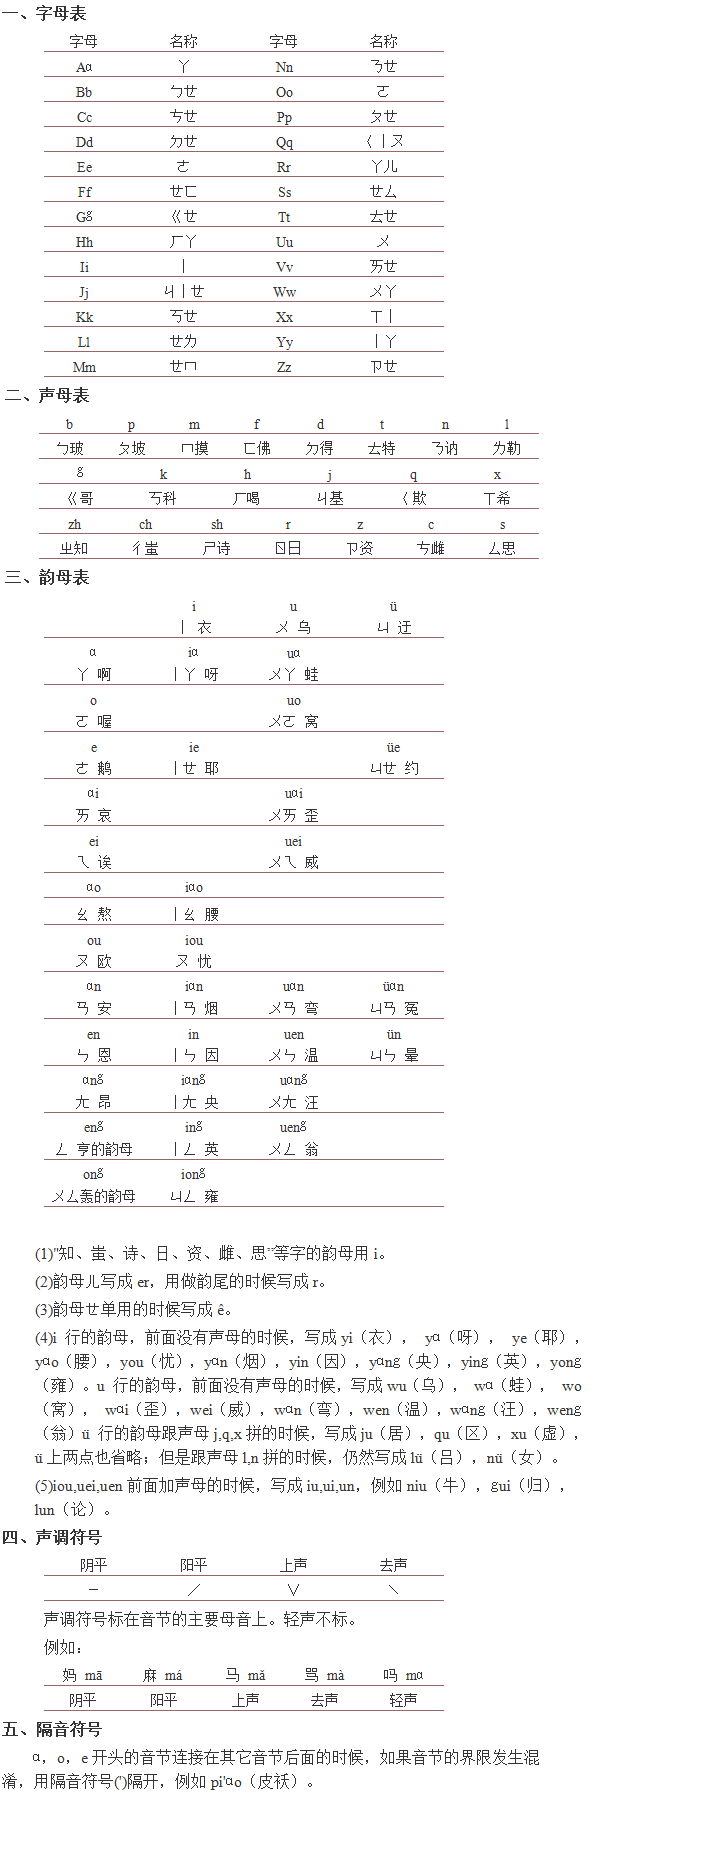 汉语拼音方案:字母表,声母表,韵母表,声调符号,隔音符号